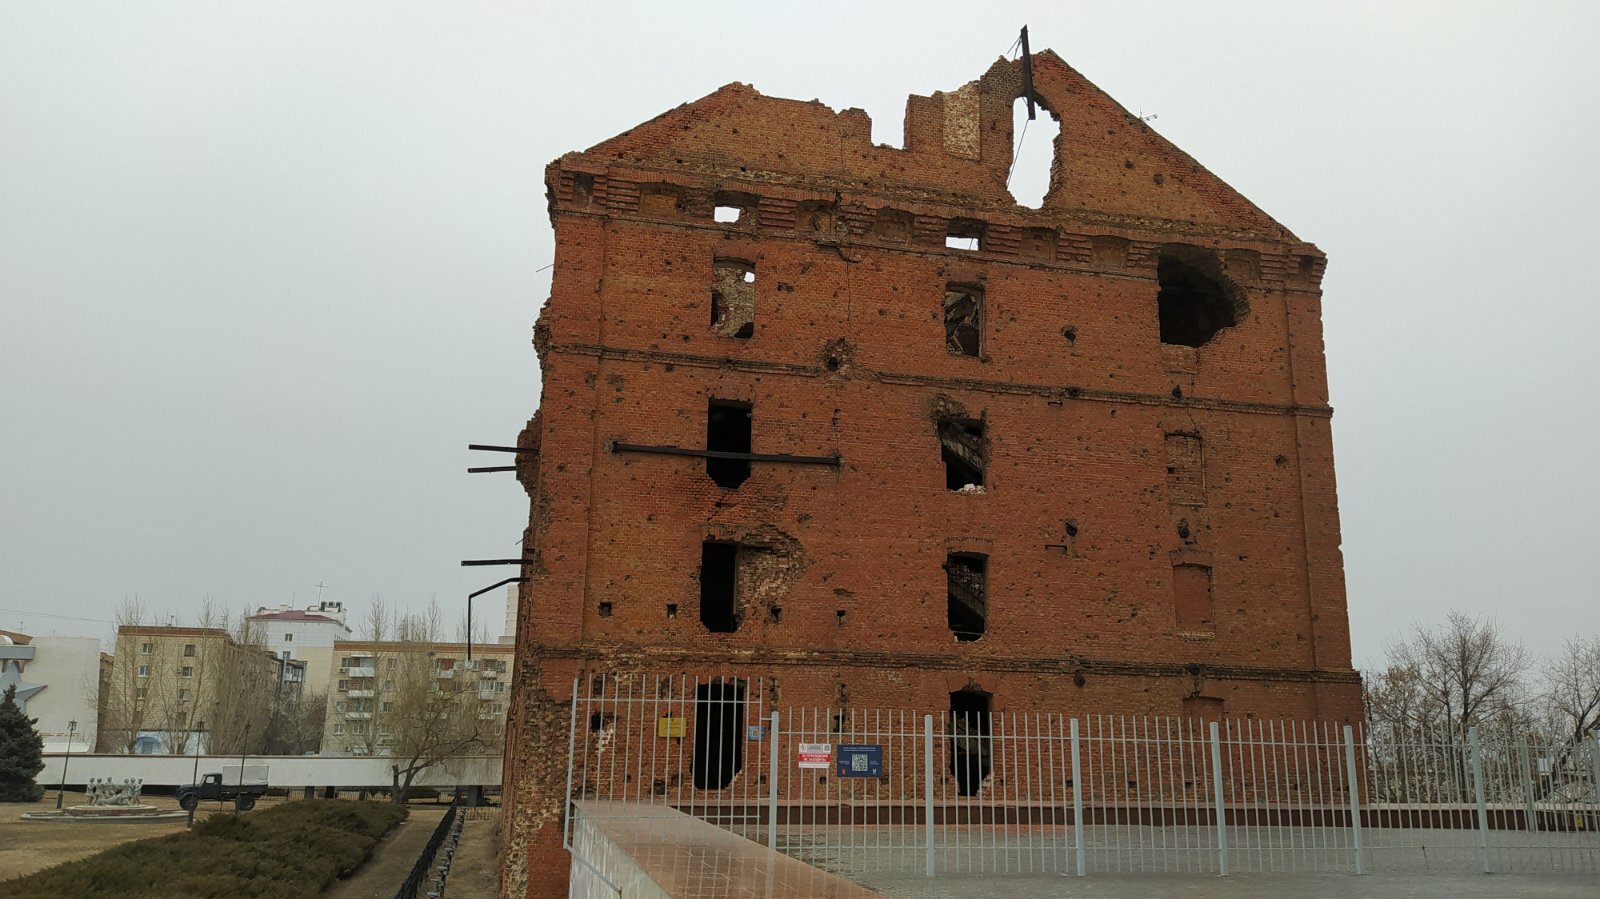 Фотографии разрушенной мельницы Гергардта шокировали волгоградцев